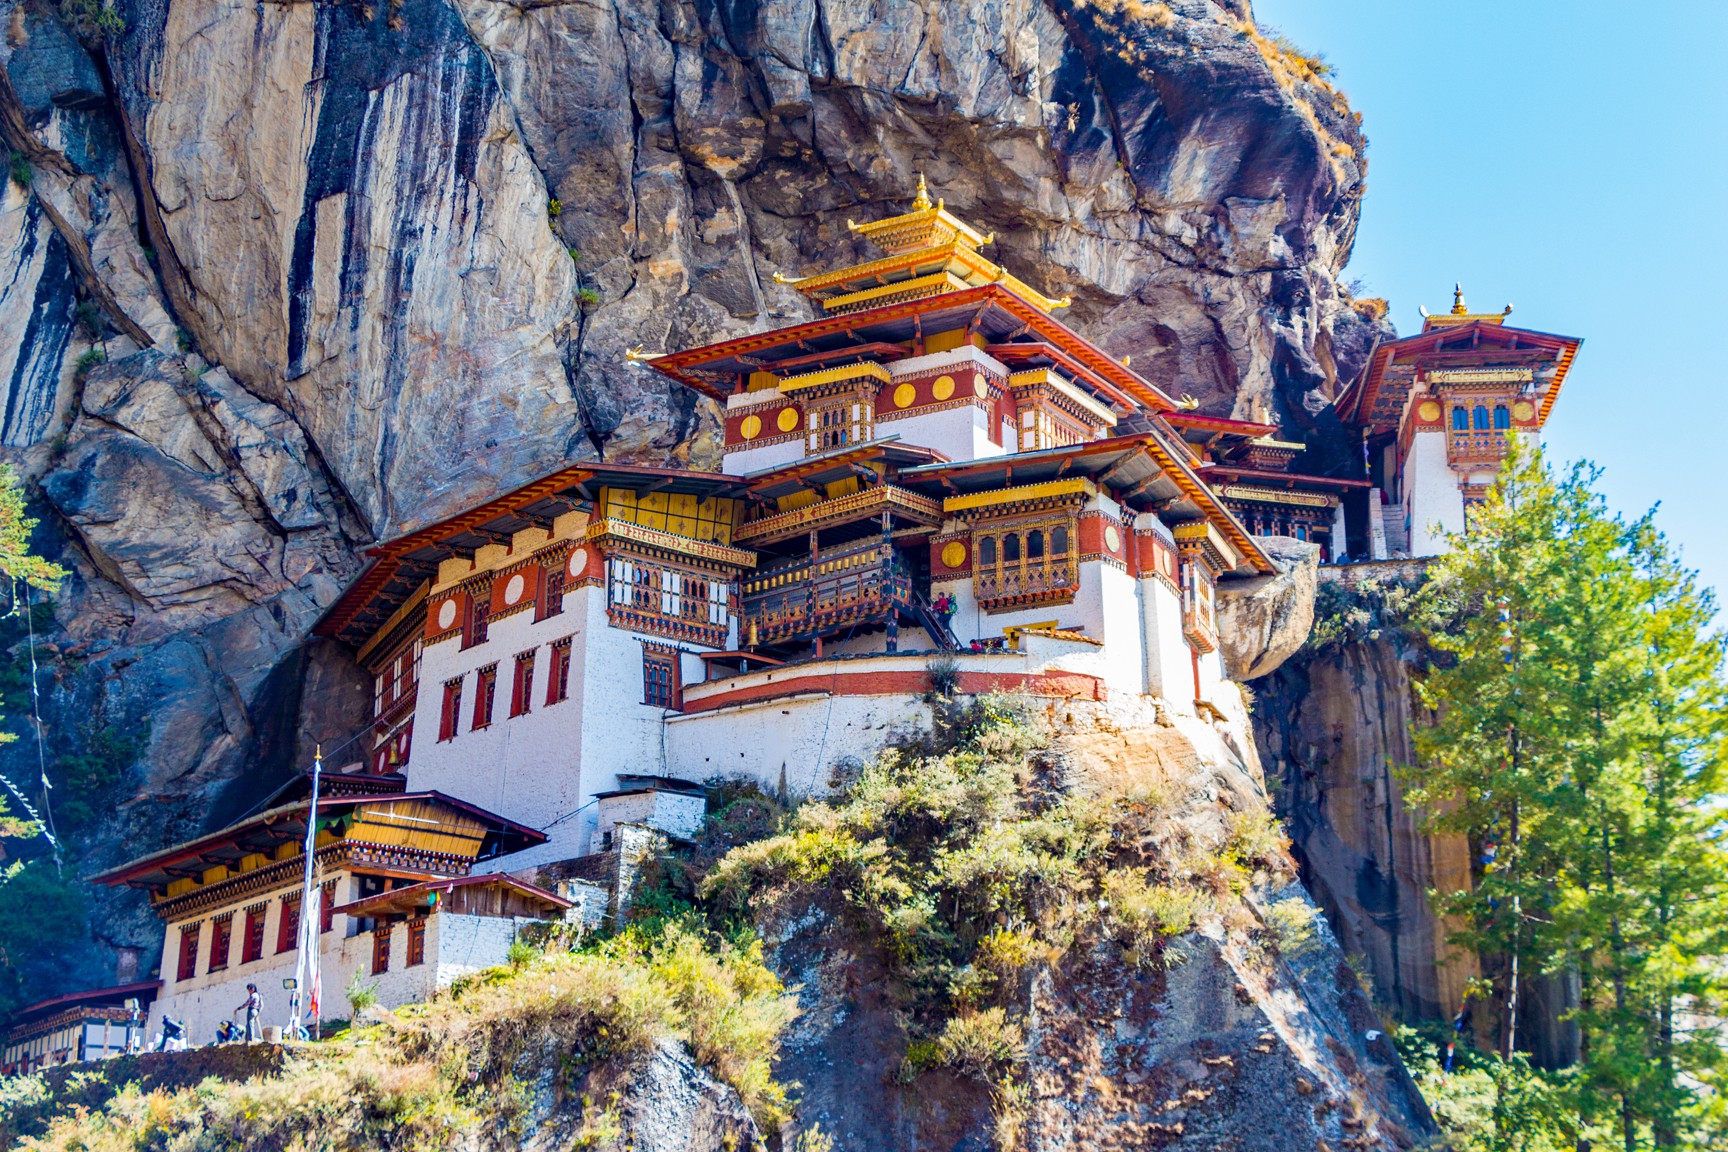 Đường phố và nhà cửa ở Bhutan được bảo tồn rất nghiêm ngặt và có thể lên tới hàng trăm năm tuổi